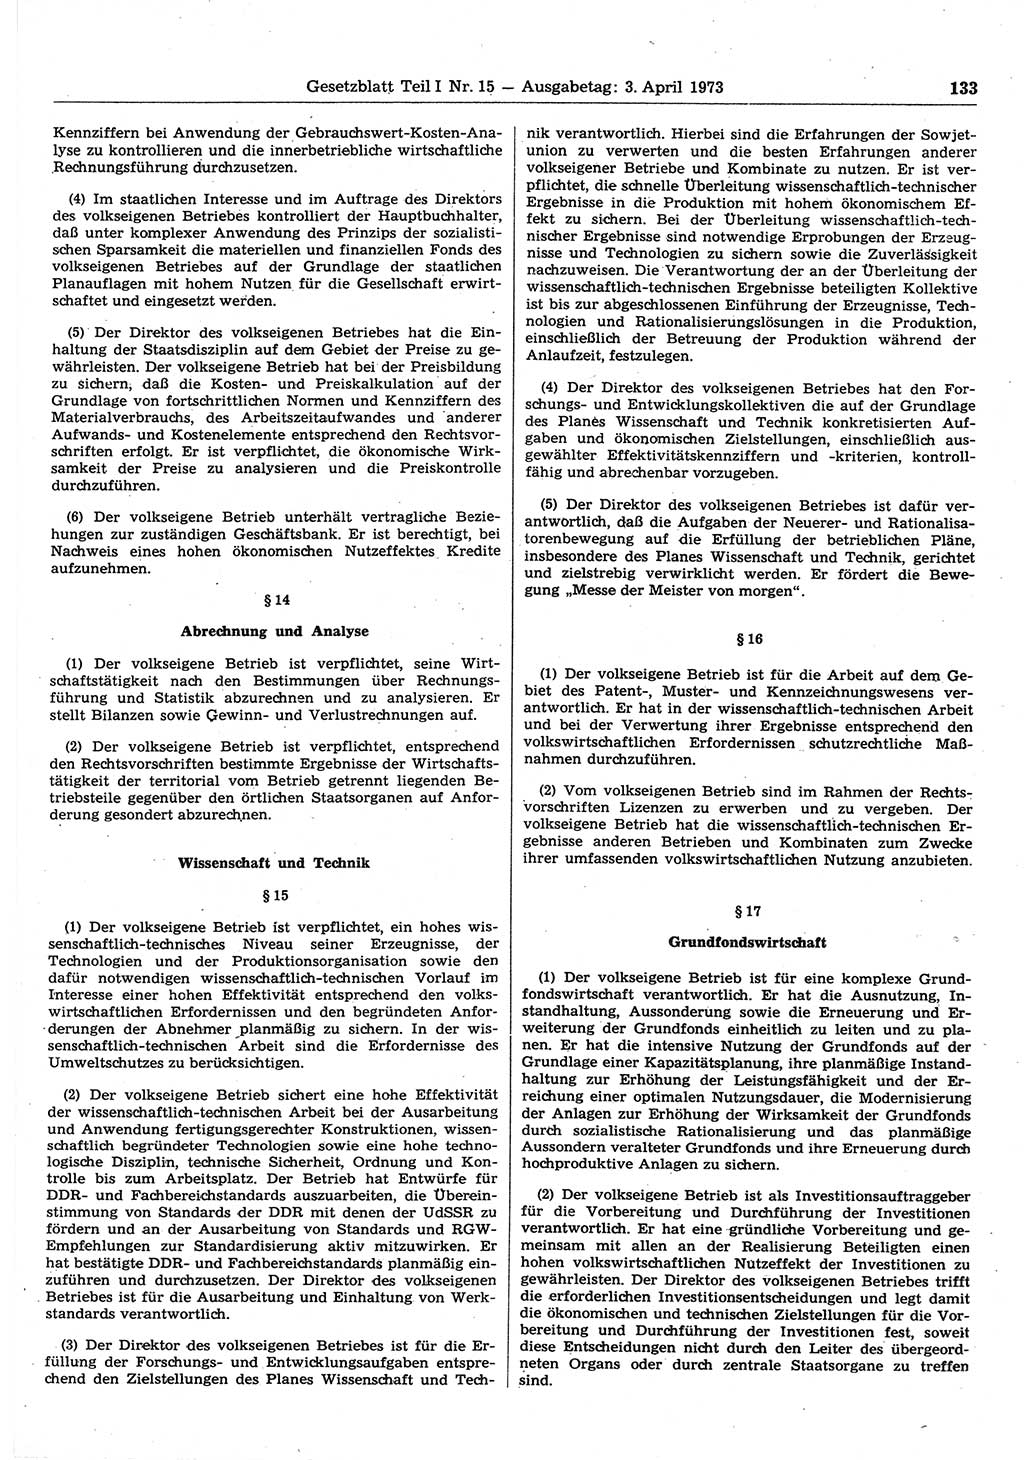 Gesetzblatt (GBl.) der Deutschen Demokratischen Republik (DDR) Teil Ⅰ 1973, Seite 133 (GBl. DDR Ⅰ 1973, S. 133)